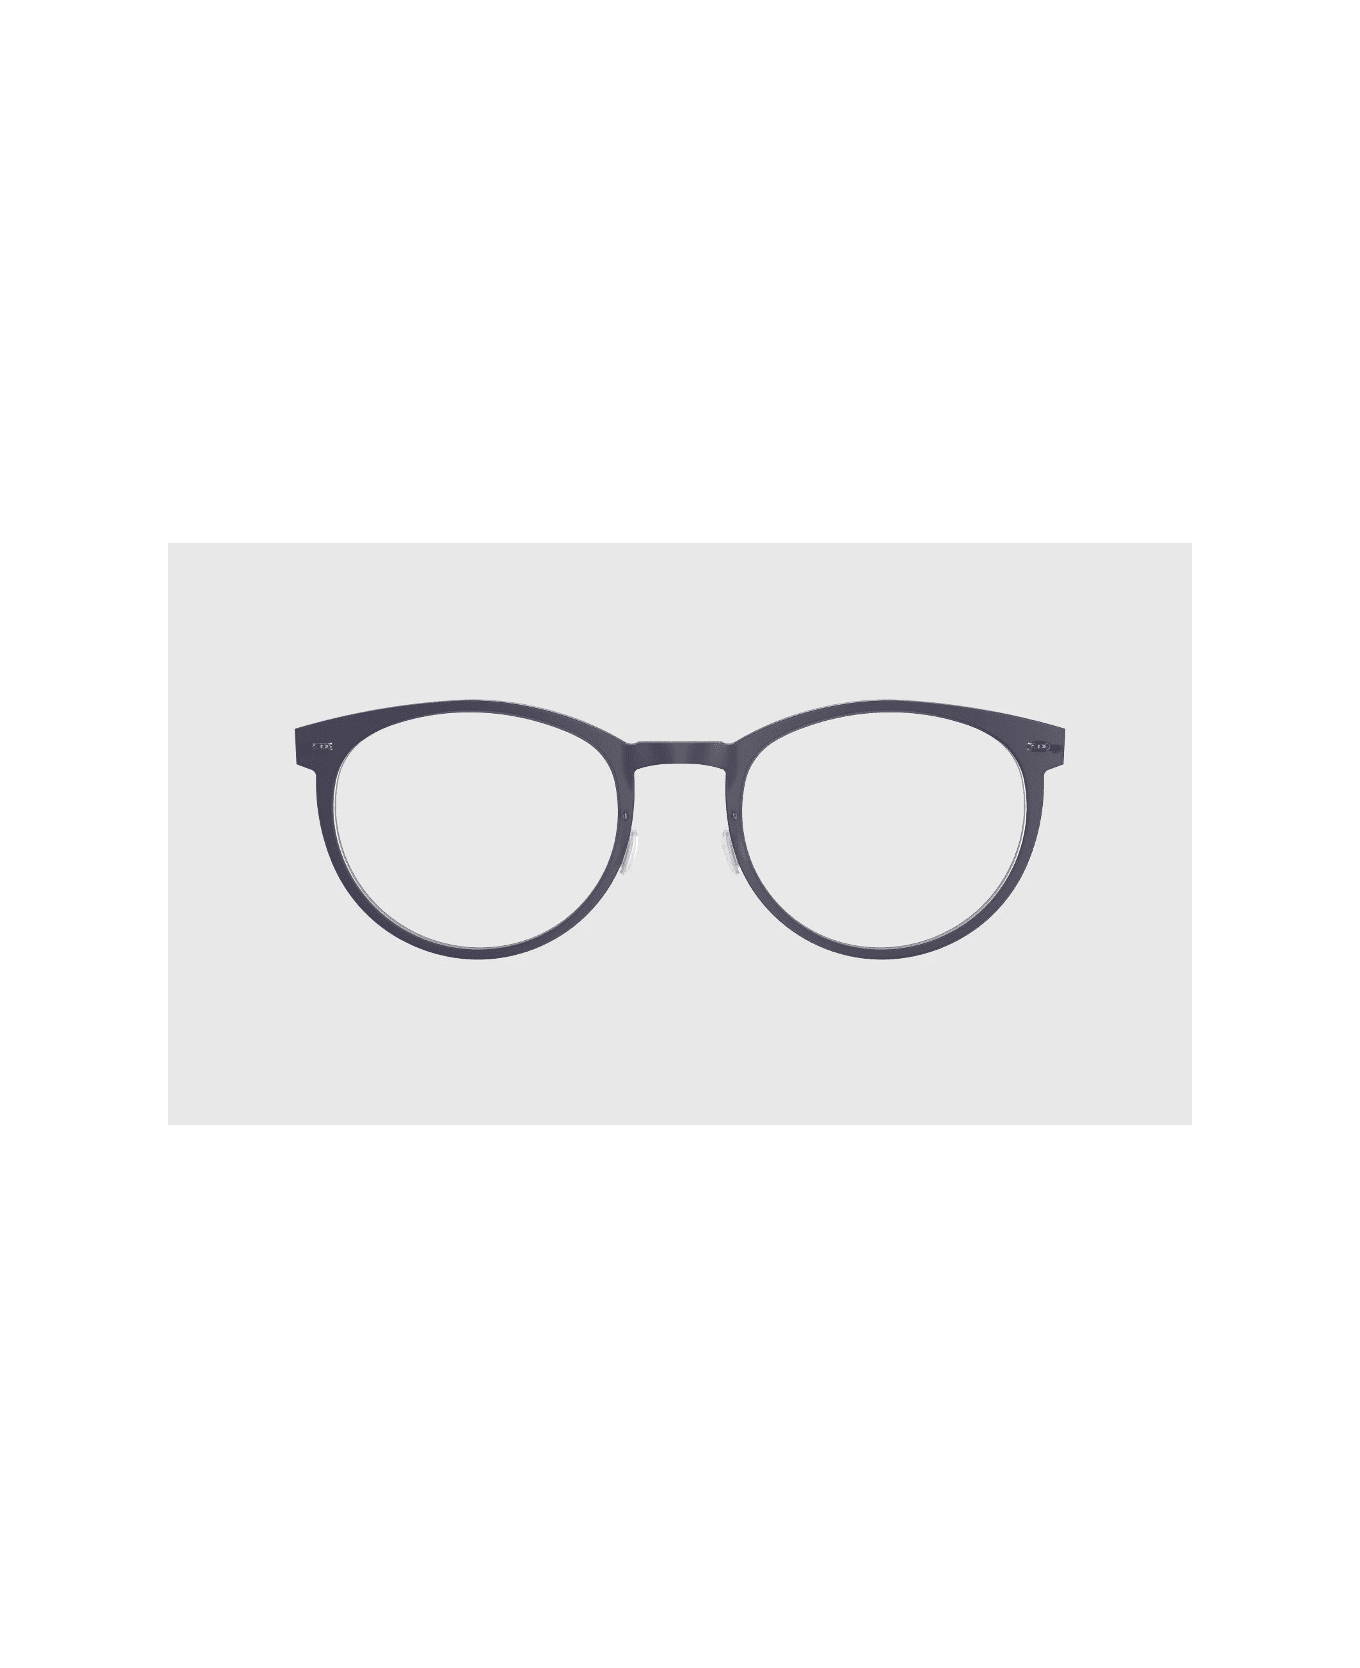 LINDBERG Now 6517 pu16 Glasses - Blu アイウェア